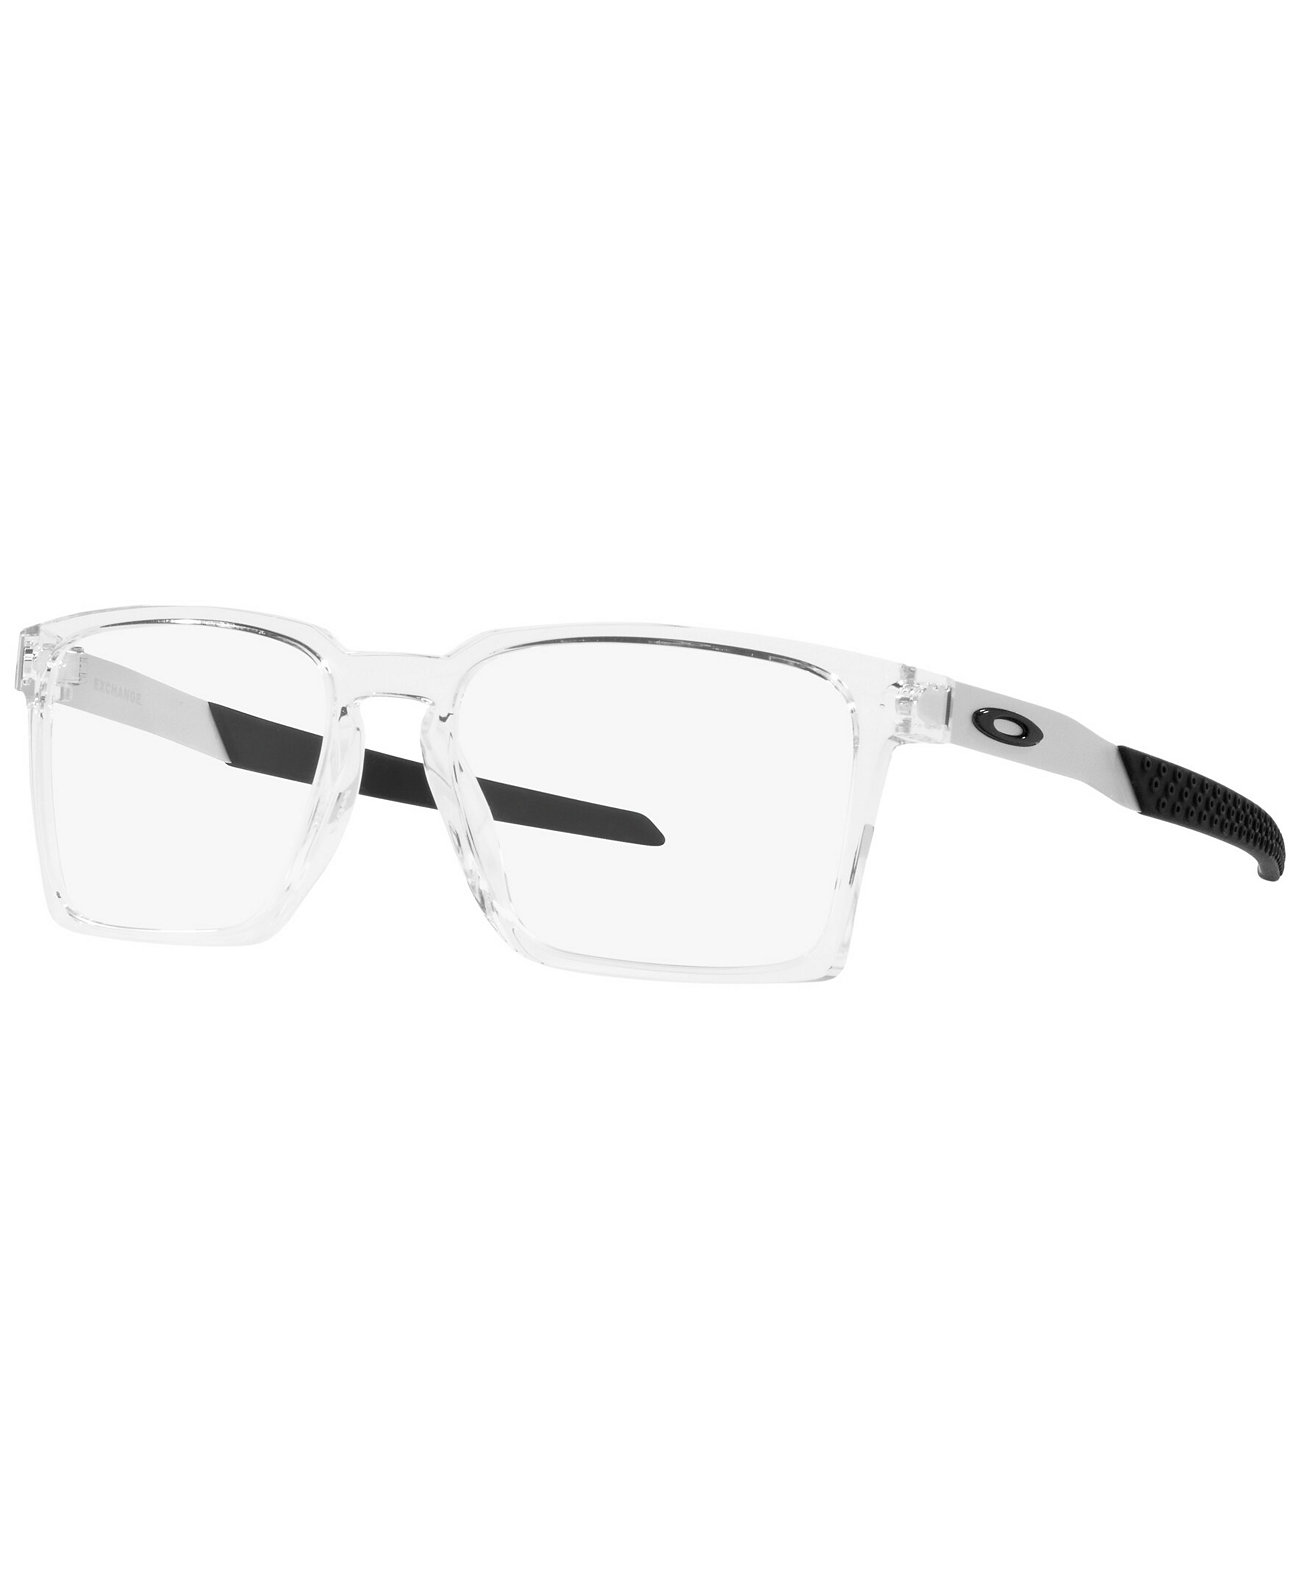 Мужские прямоугольные очки OX8055 Exchange Oakley